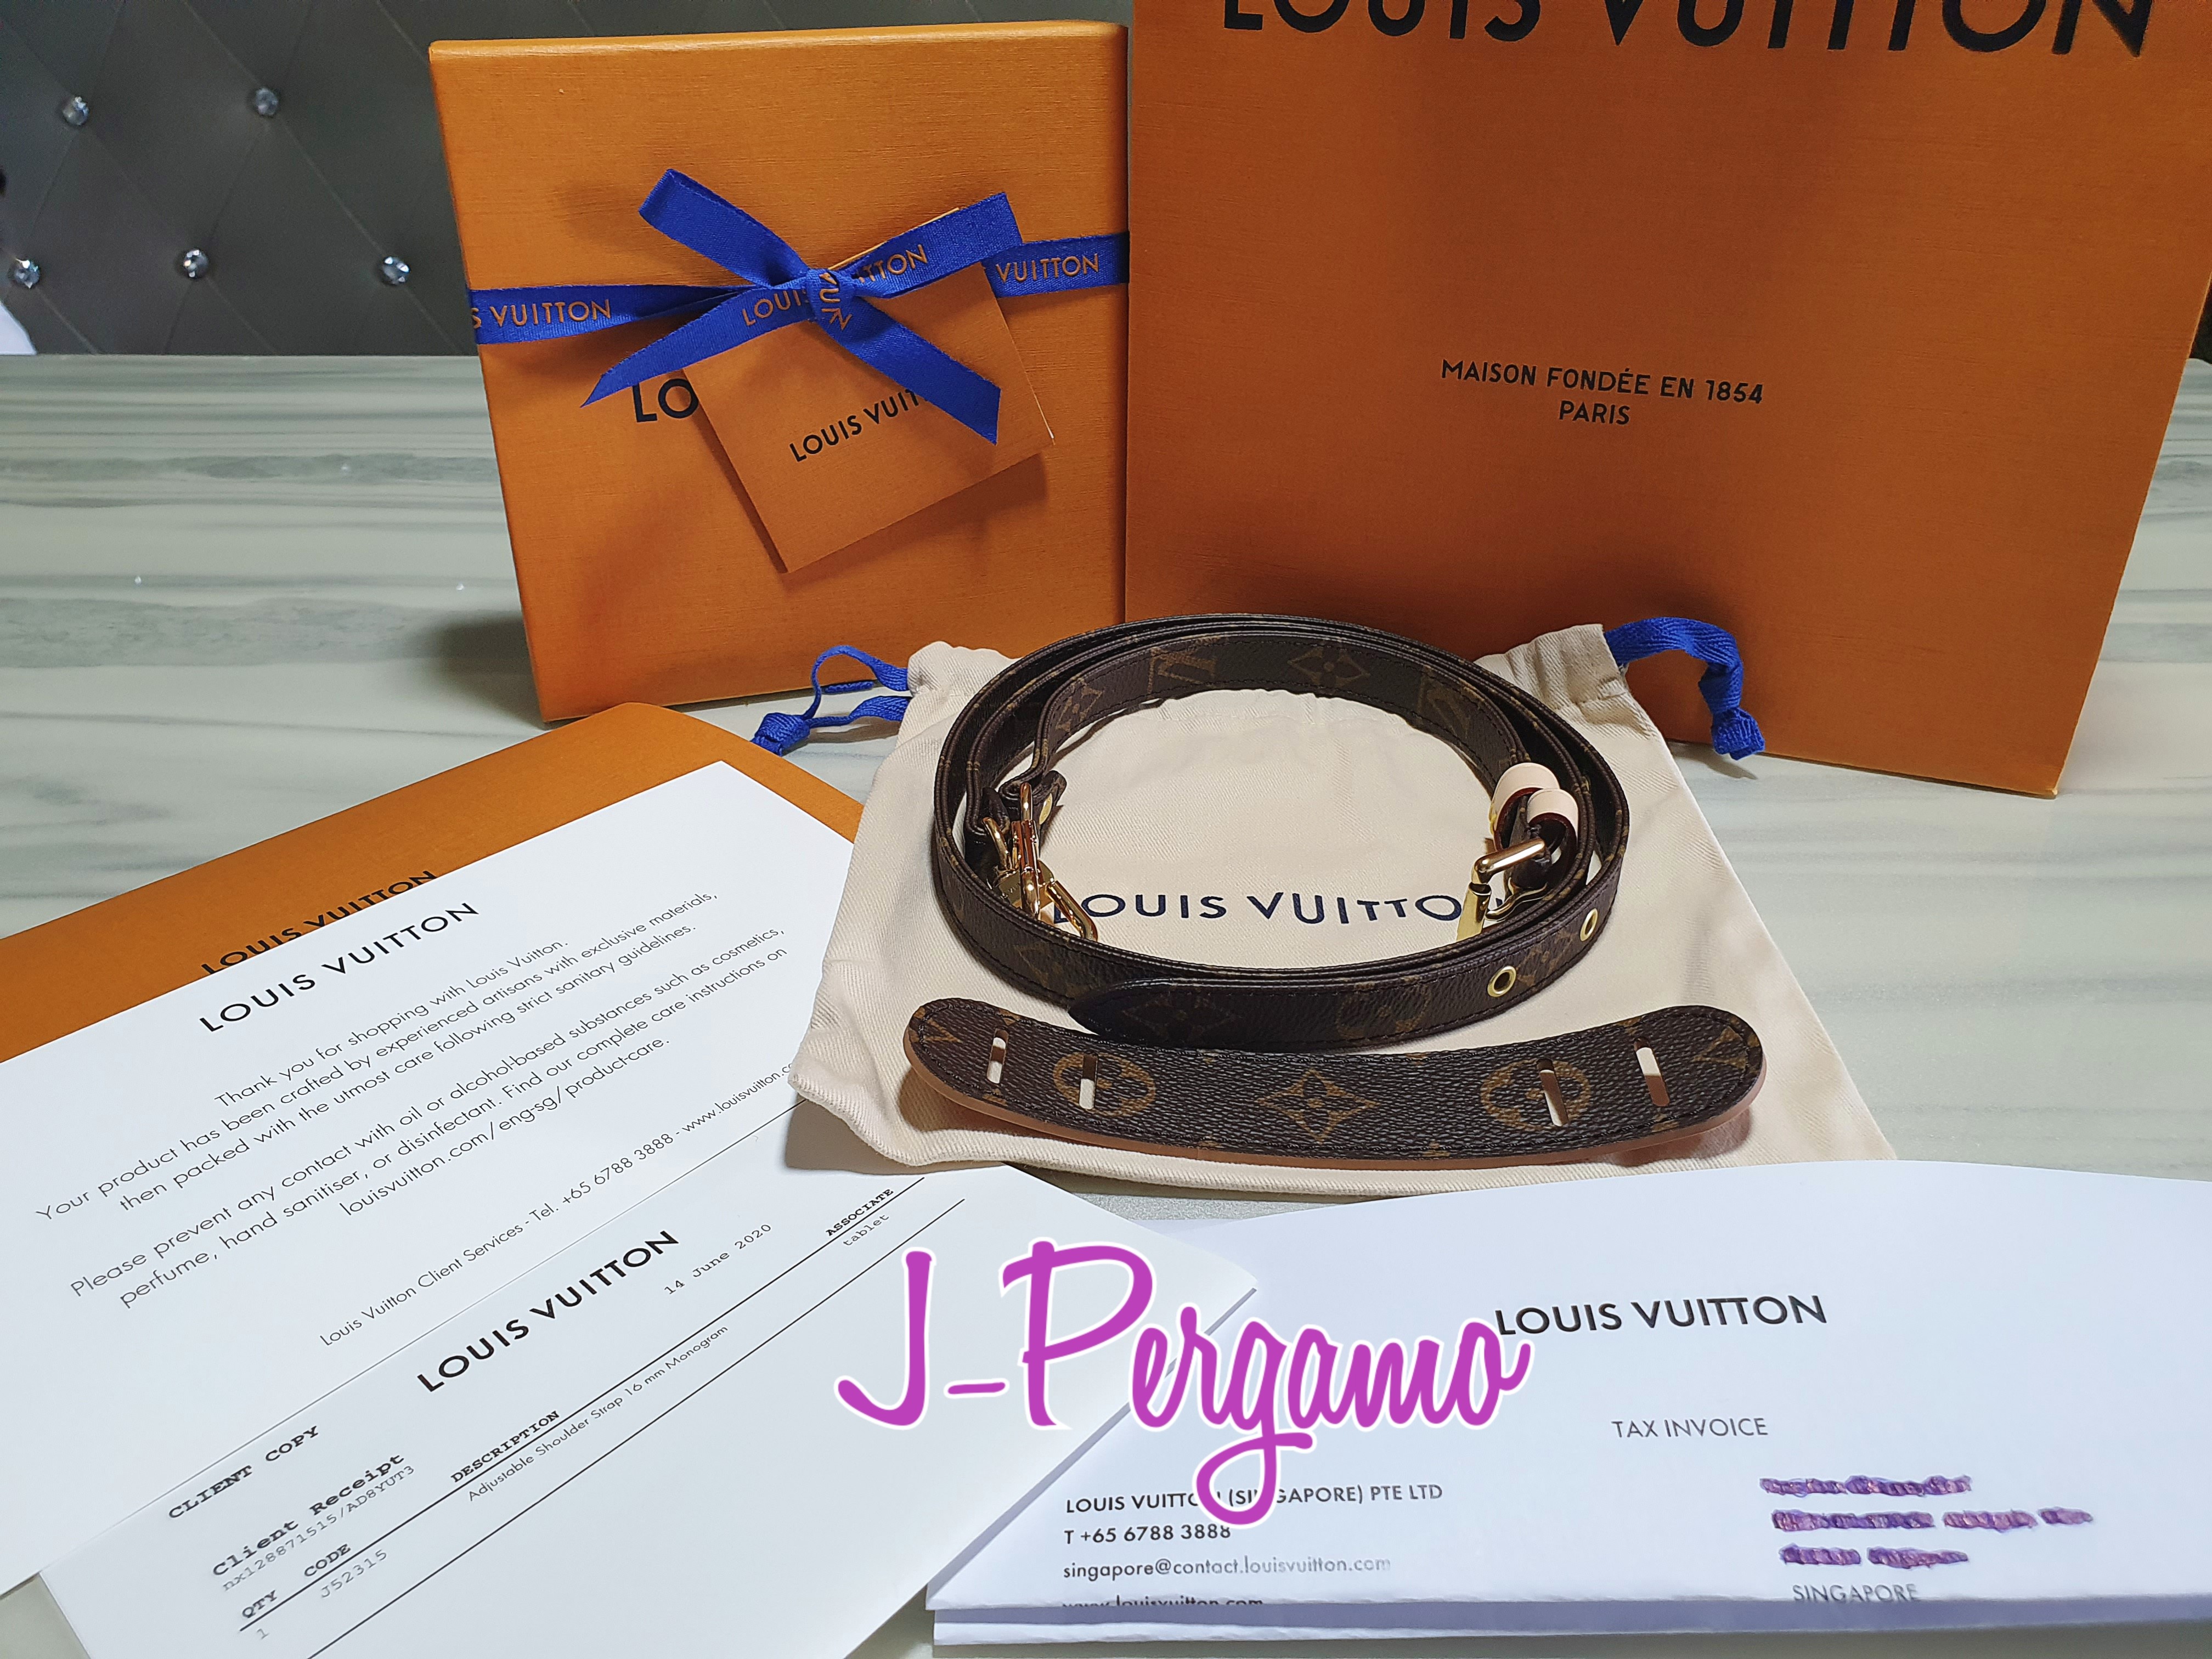 090623 SNEAK PEEK Preloved Louis Vuitton Monogram Essential V